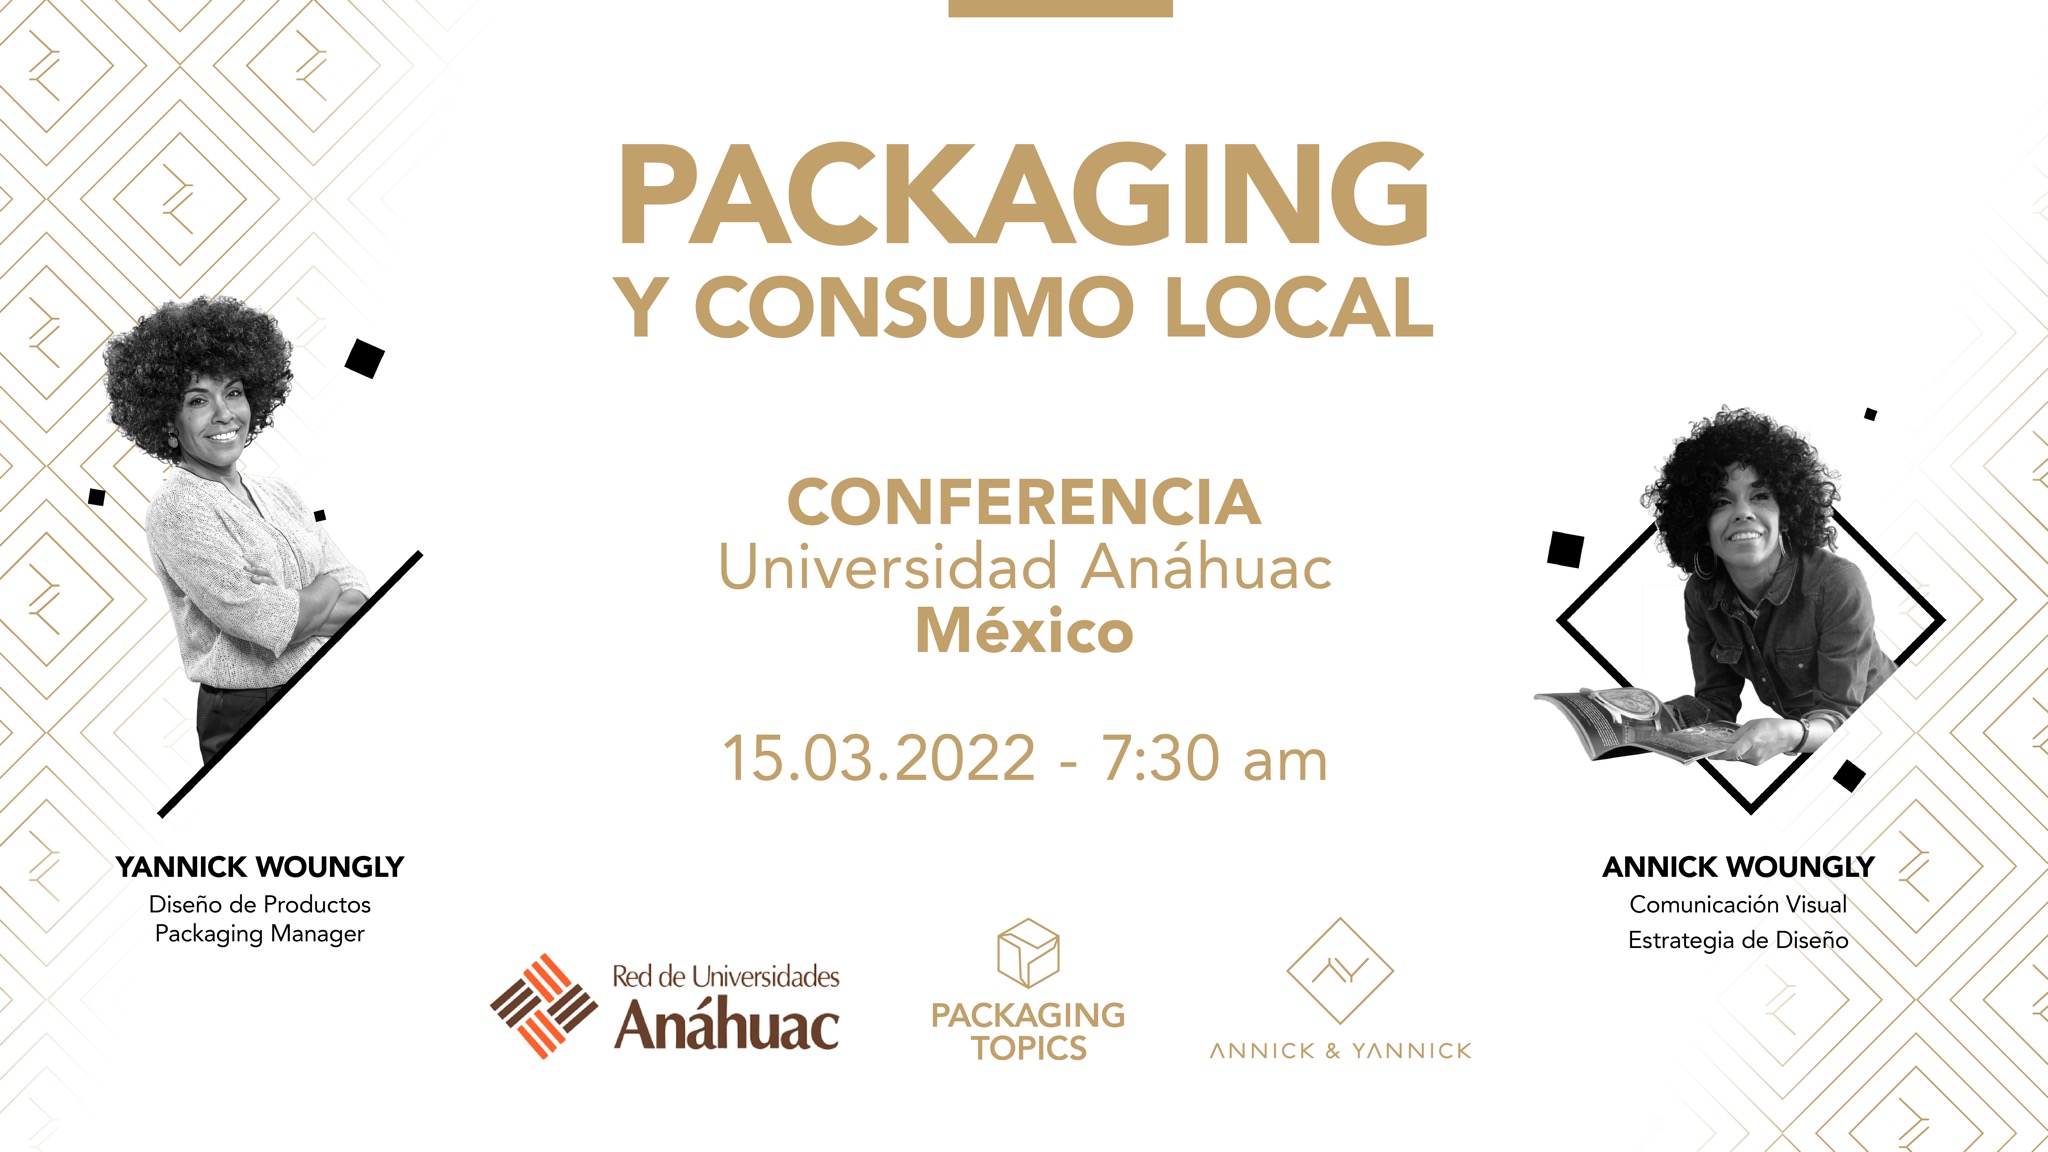 Annick & Yannick. Conferencia packaging y consumo local. Universidad Anáhuac de Cancún, México.